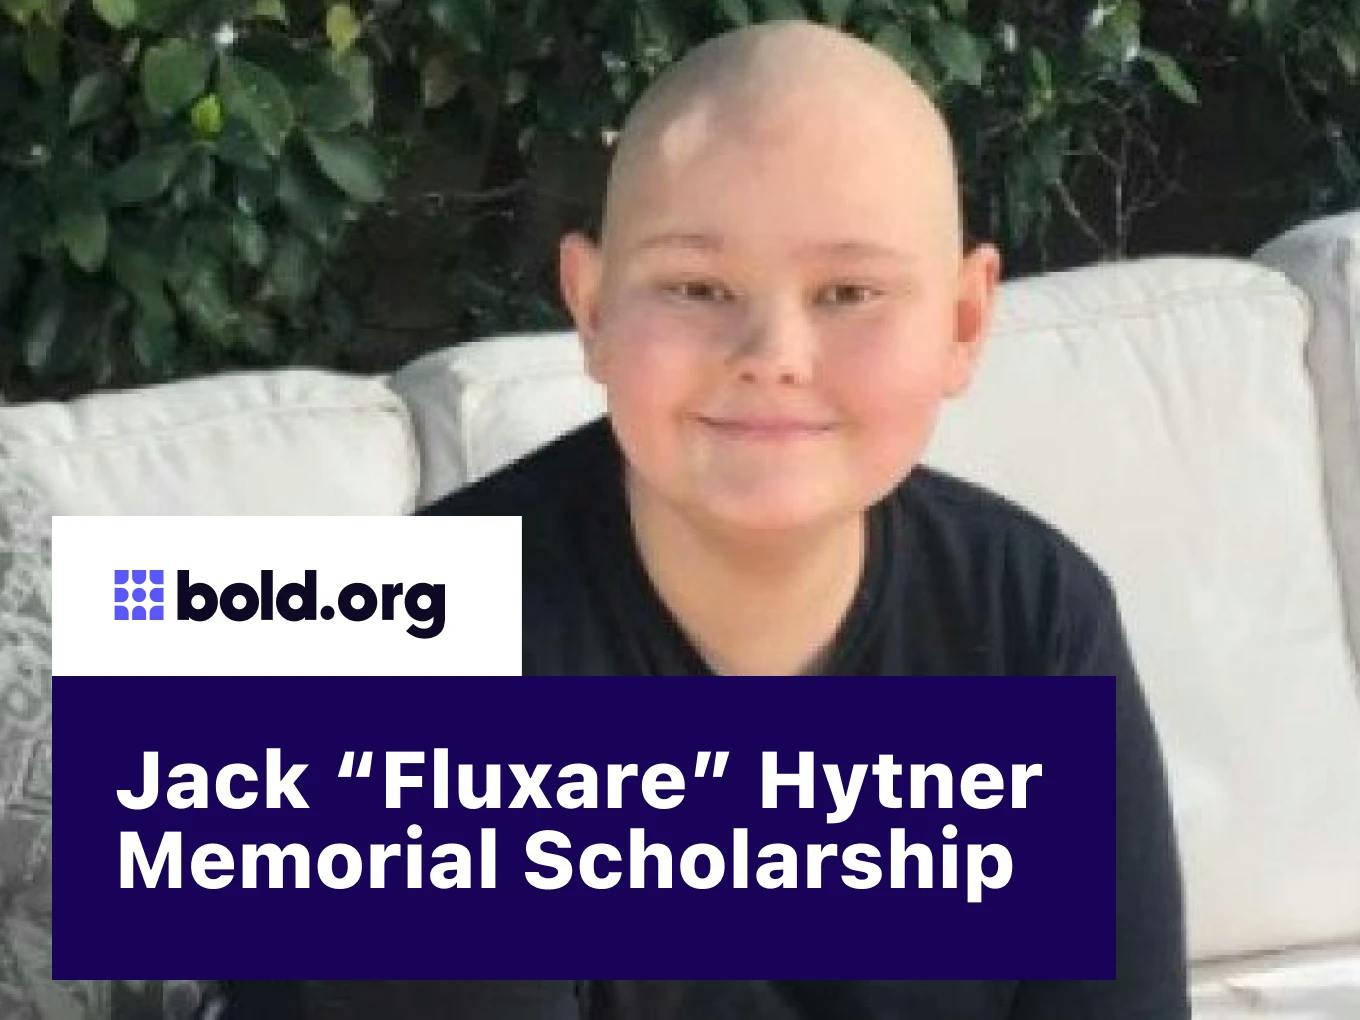 Jack “Fluxare” Hytner Memorial Scholarship